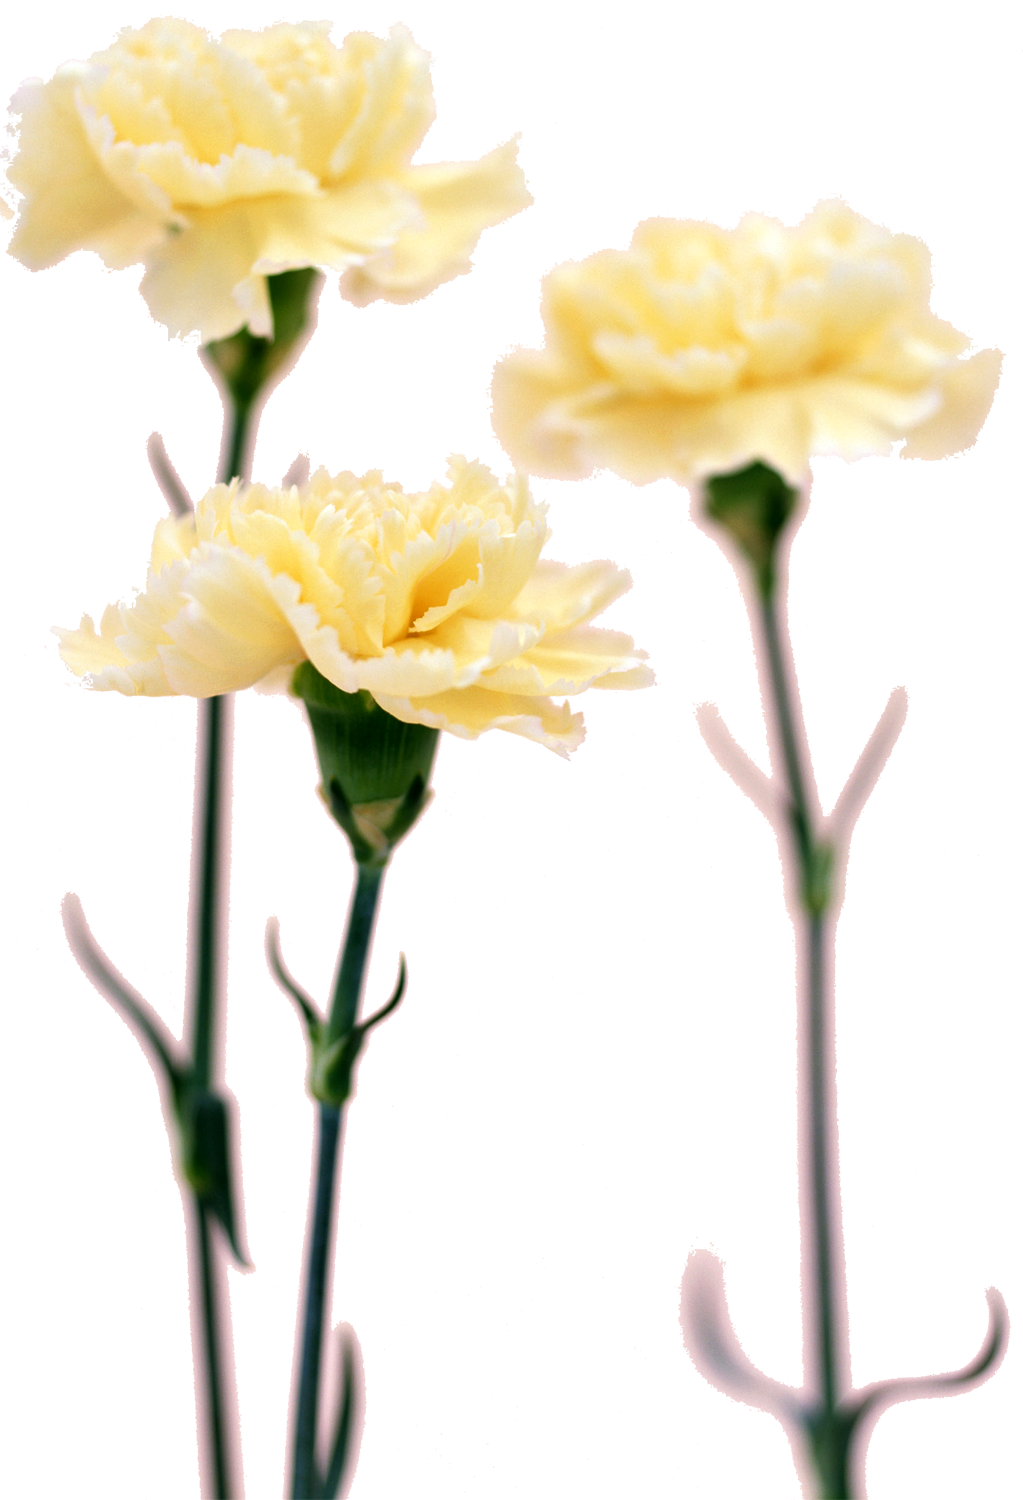 花や葉の写真 画像 フリー素材 No 087 白 カーネーション